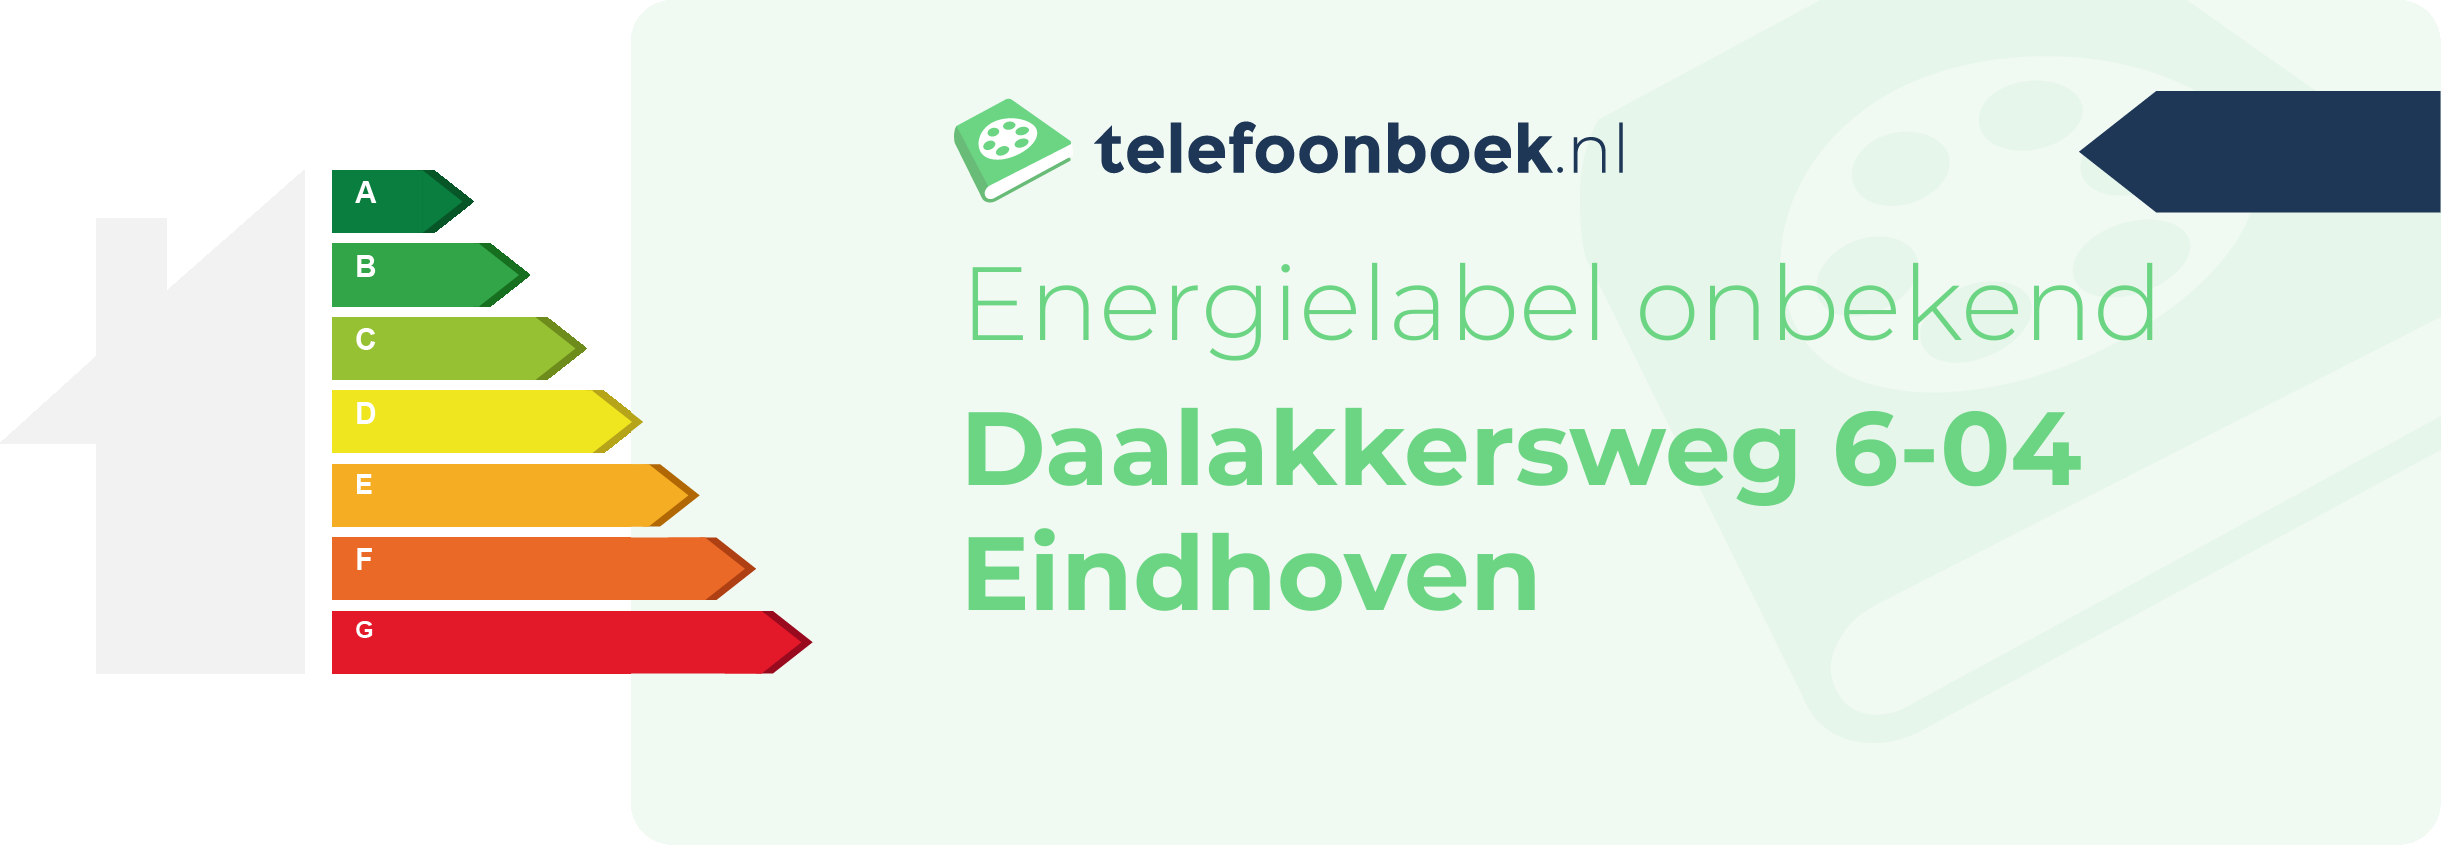 Energielabel Daalakkersweg 6-04 Eindhoven